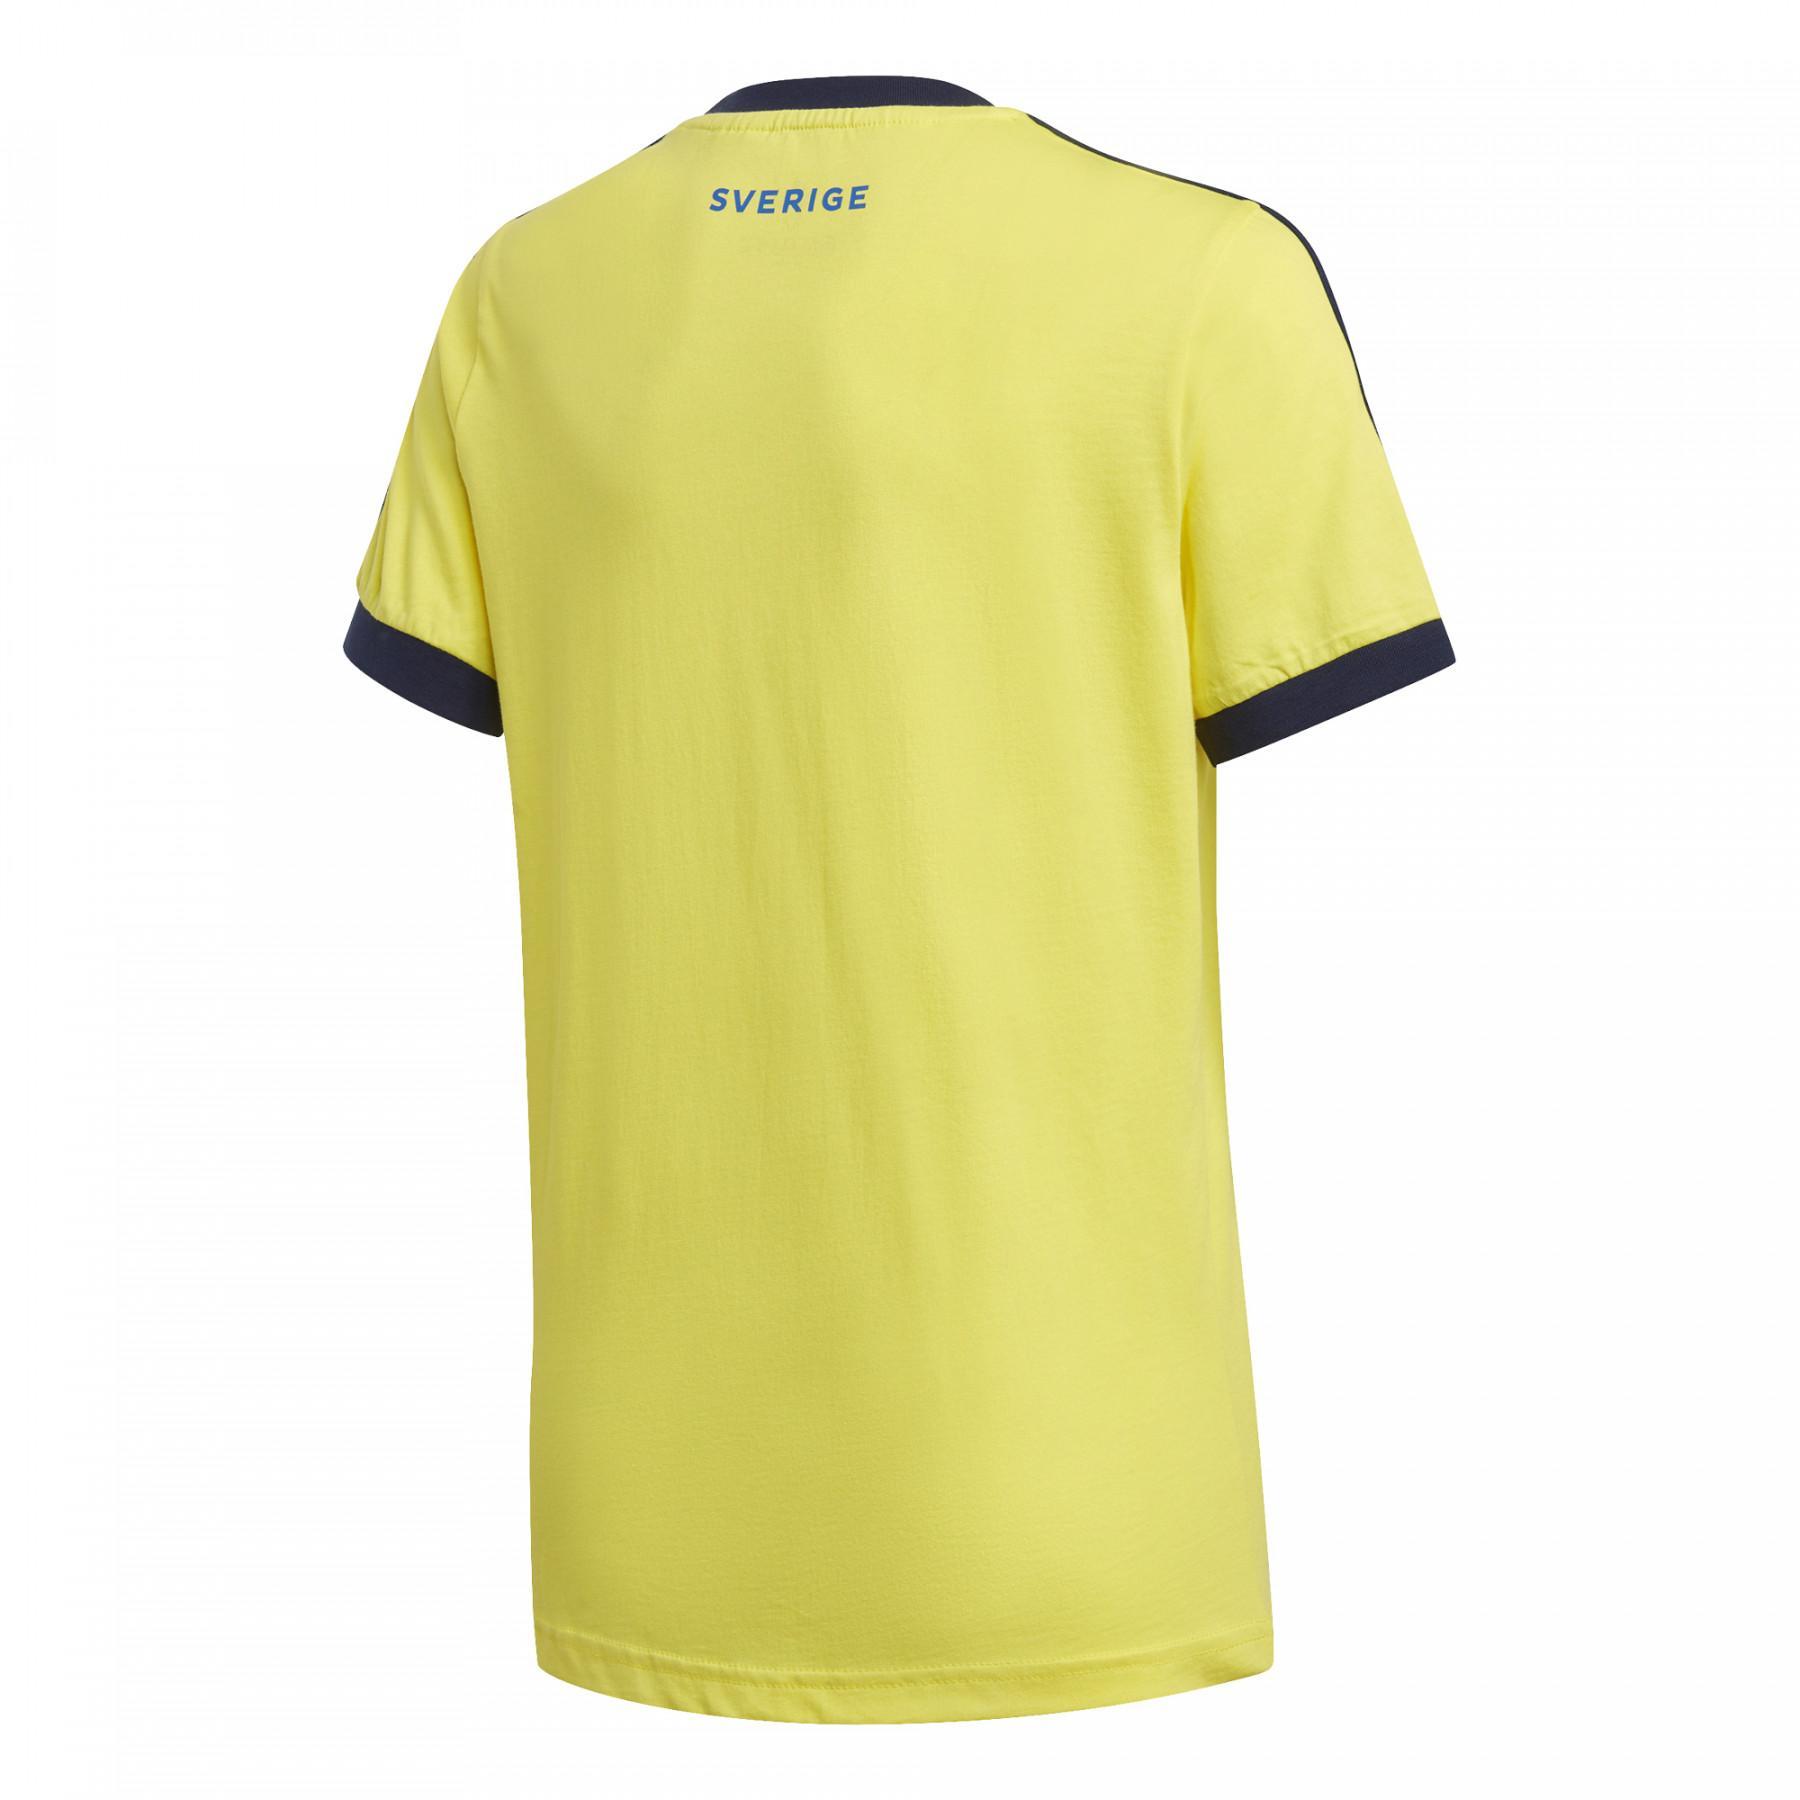 Kinder-T-Shirt Suède 3-Stripes 2020